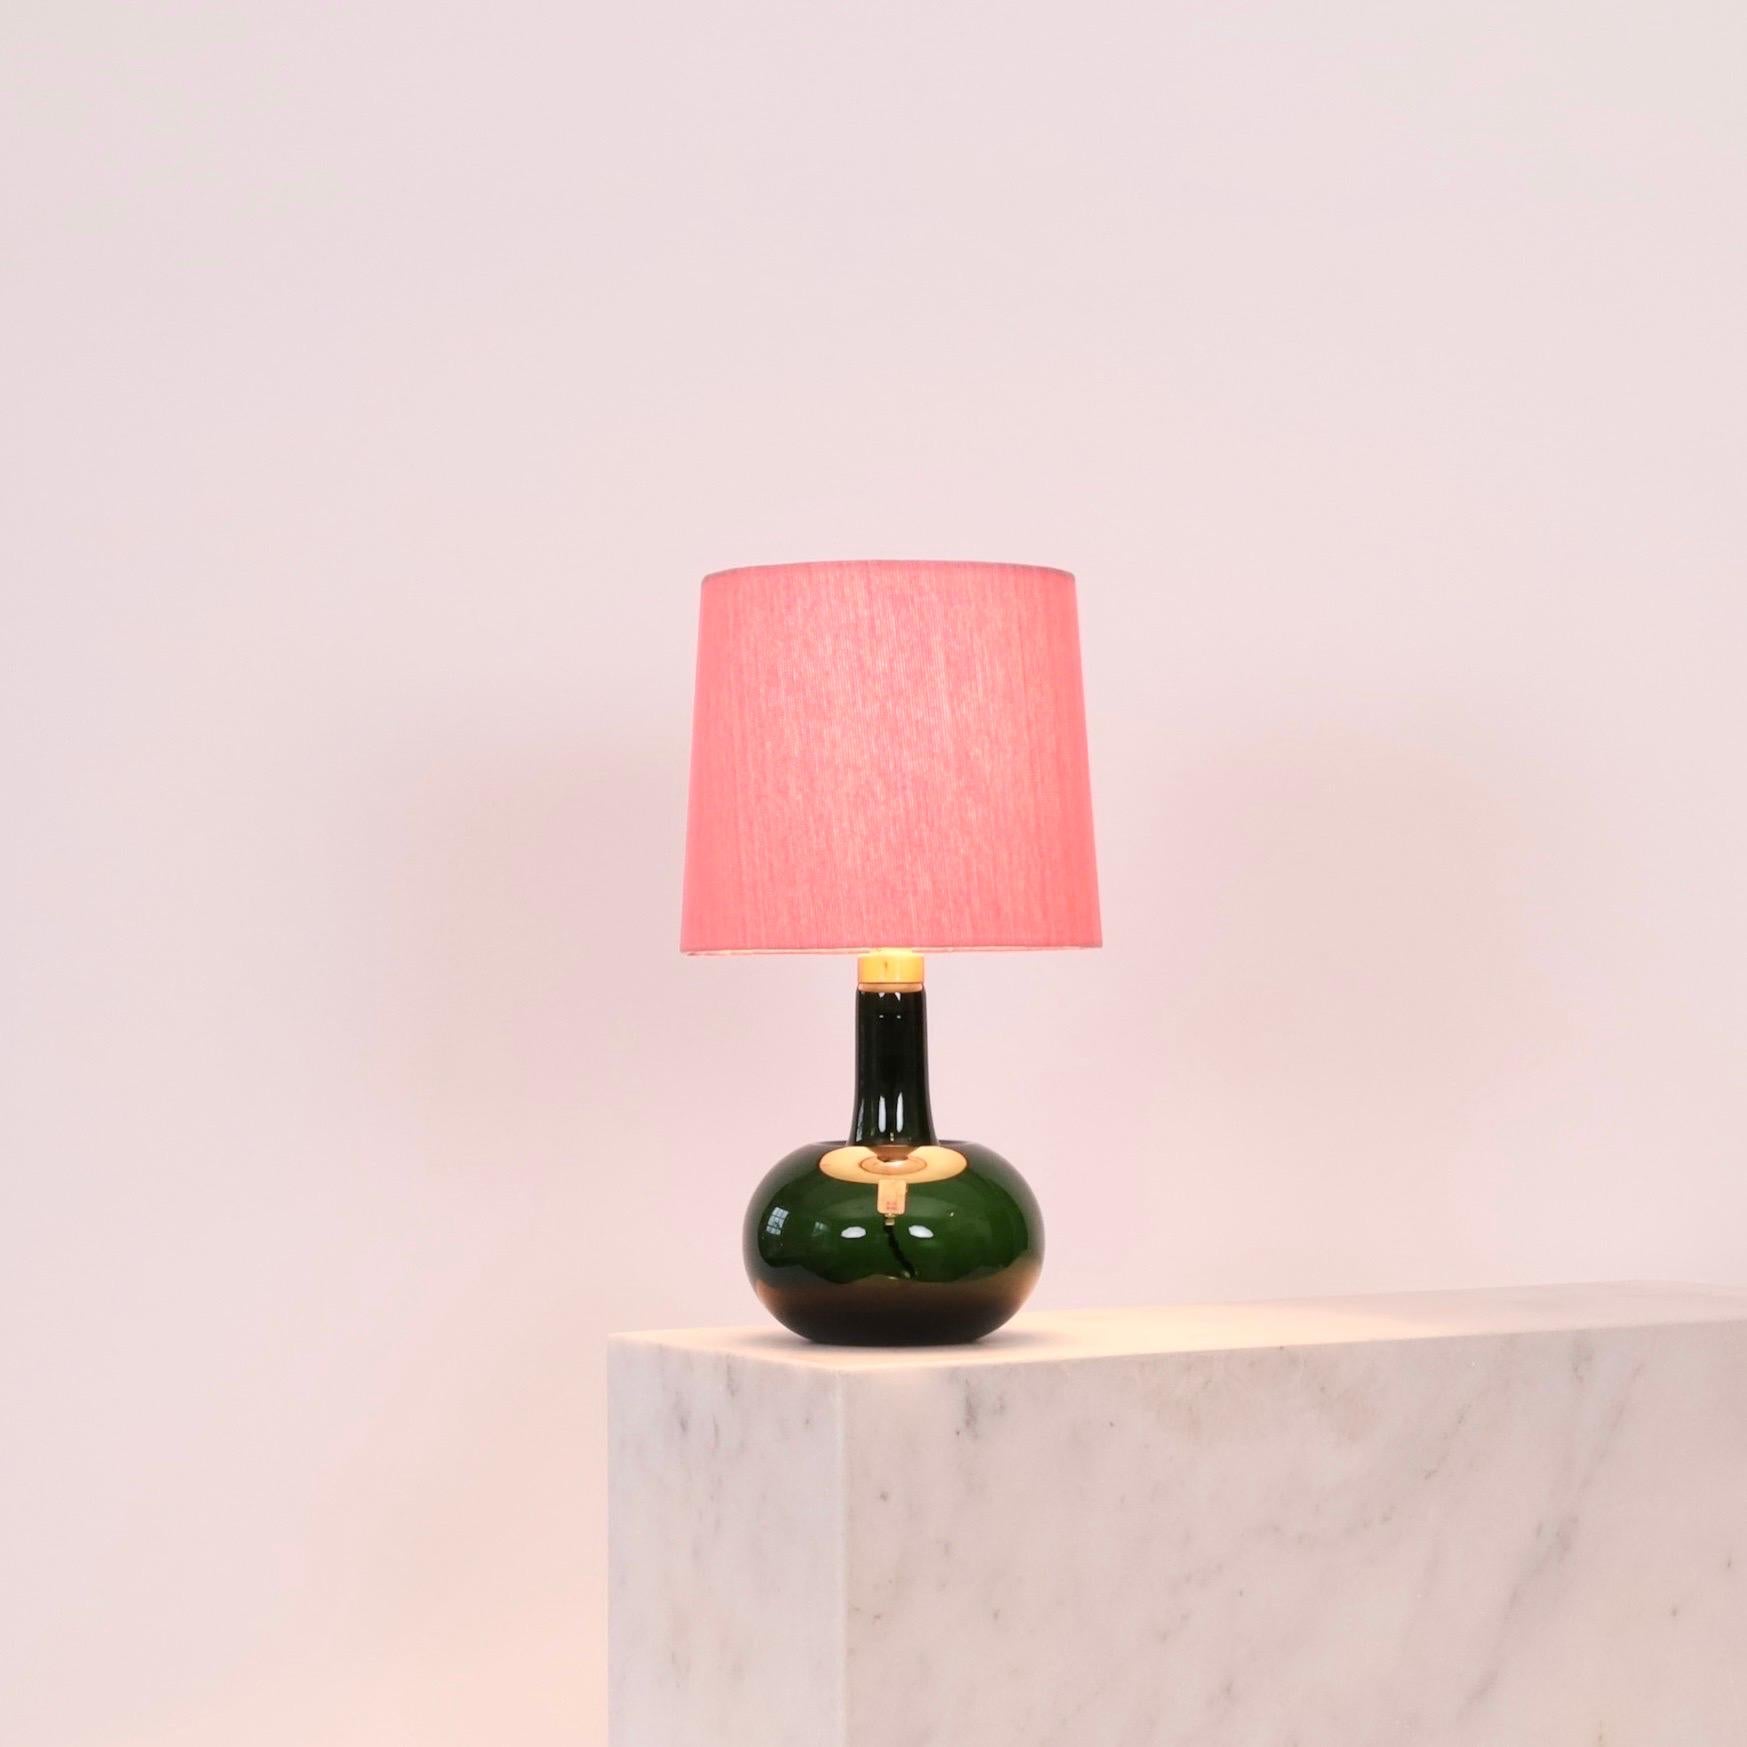 Lampe de bureau verte conçue par Michael Bang pour le danois Holmegaard Glasværk en 1975, dotée d'un nouvel abat-jour en textile artisanal de Majorque. Une attribution colorée à un intérieur moderne.

* Lampe de table en verre vert avec un col en